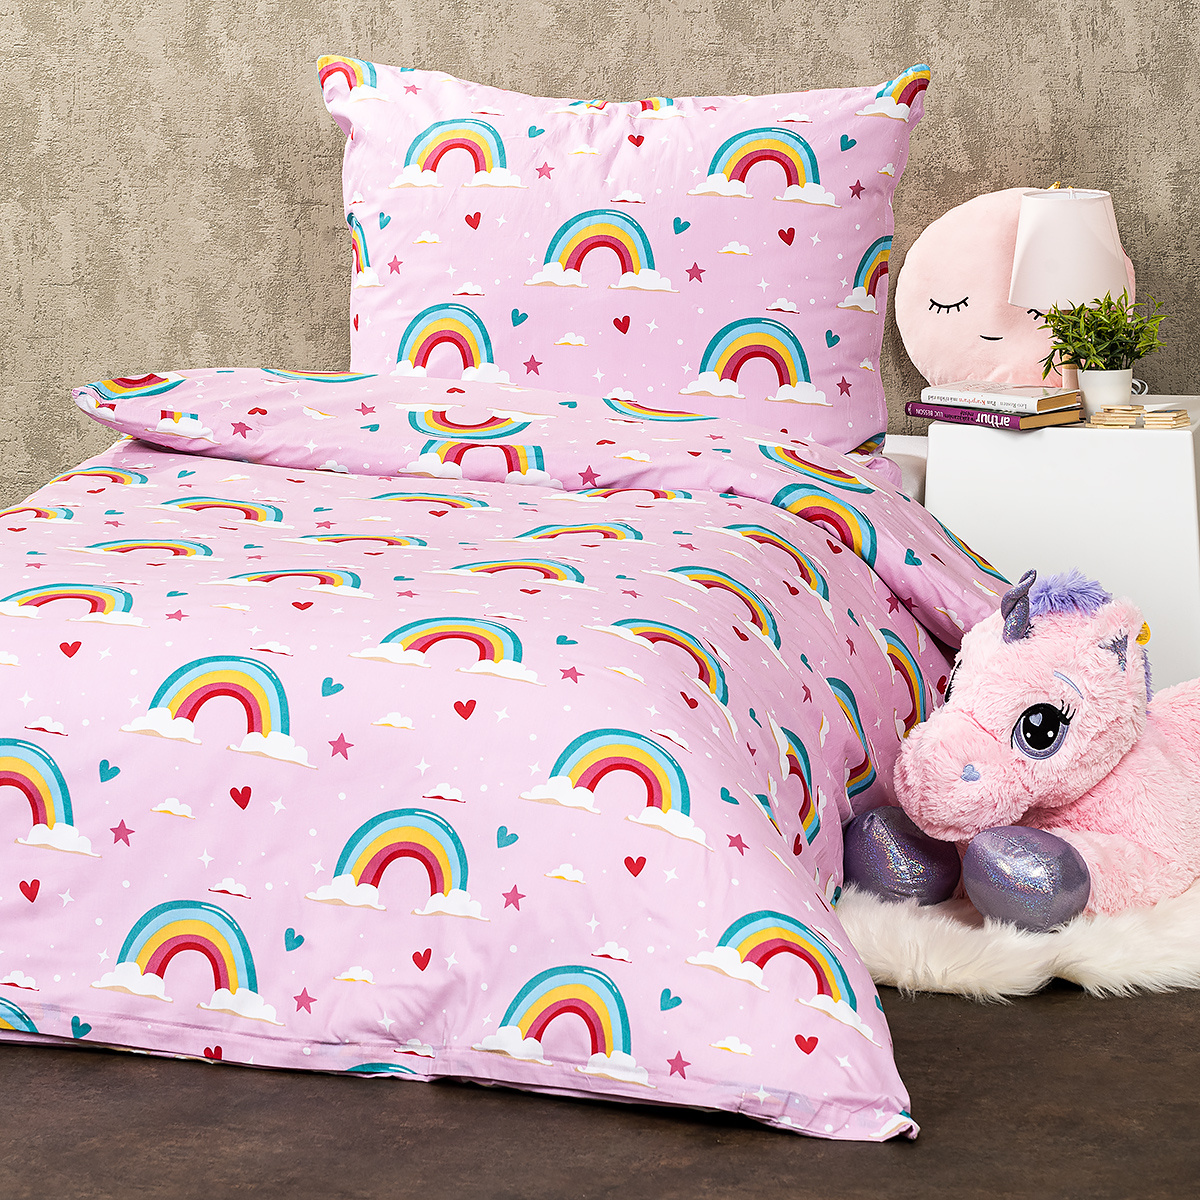 4Home Detské bavlnené obliečky Rainbow, 140 x 200 cm, 70 x 90 cm